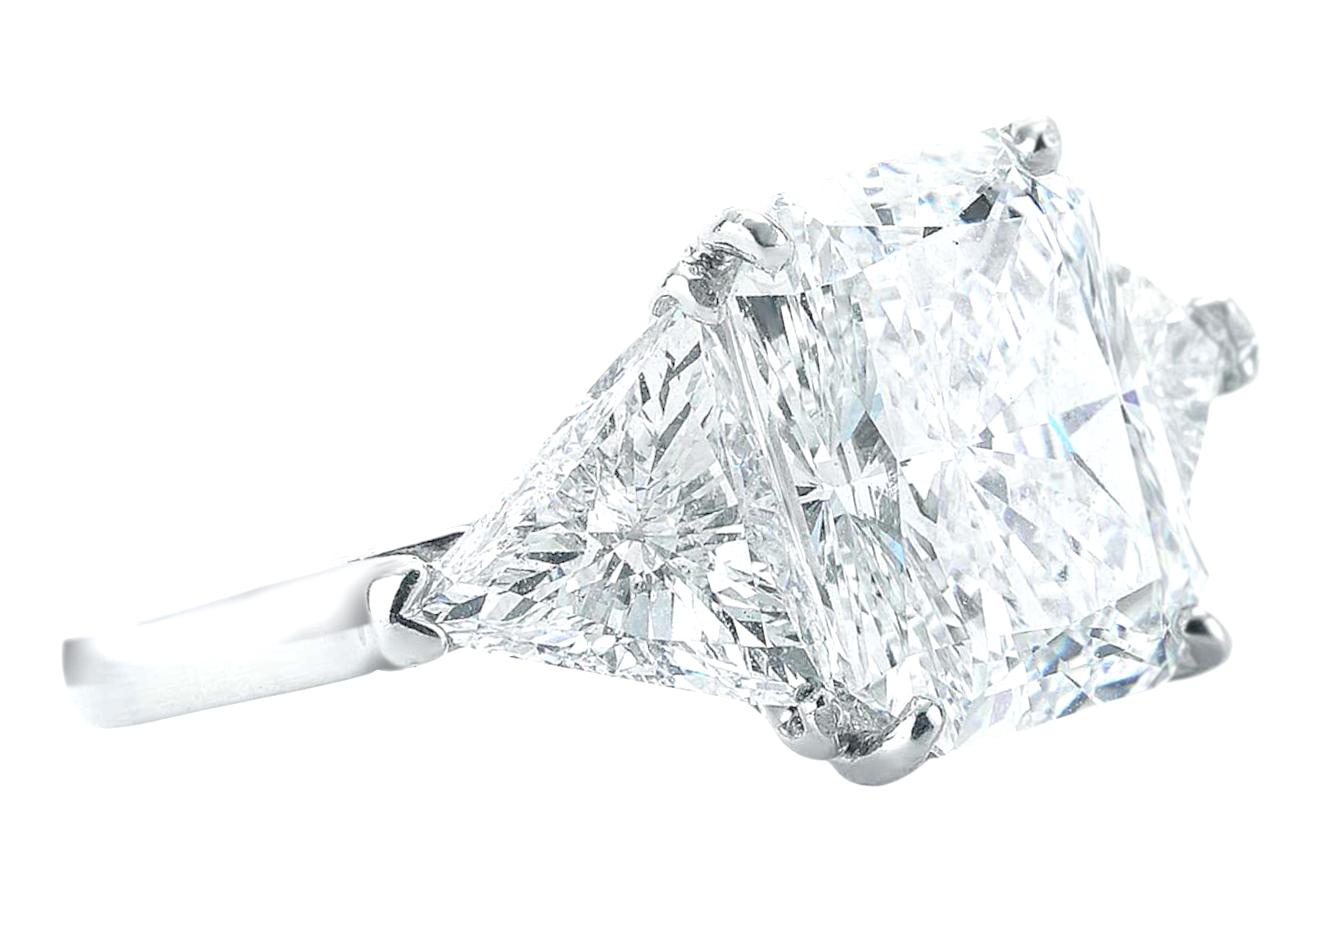 Exquisiter Diamantring mit drei Steinen, bestehend aus einem GIA-zertifizierten 4,02-Karat-Diamanten im Radiant-Schliff und zwei seitlichen Diamanten im Billionen-Schliff mit hervorragenden Proportionen.
Jeder Diamant im Billionenschliff wiegt